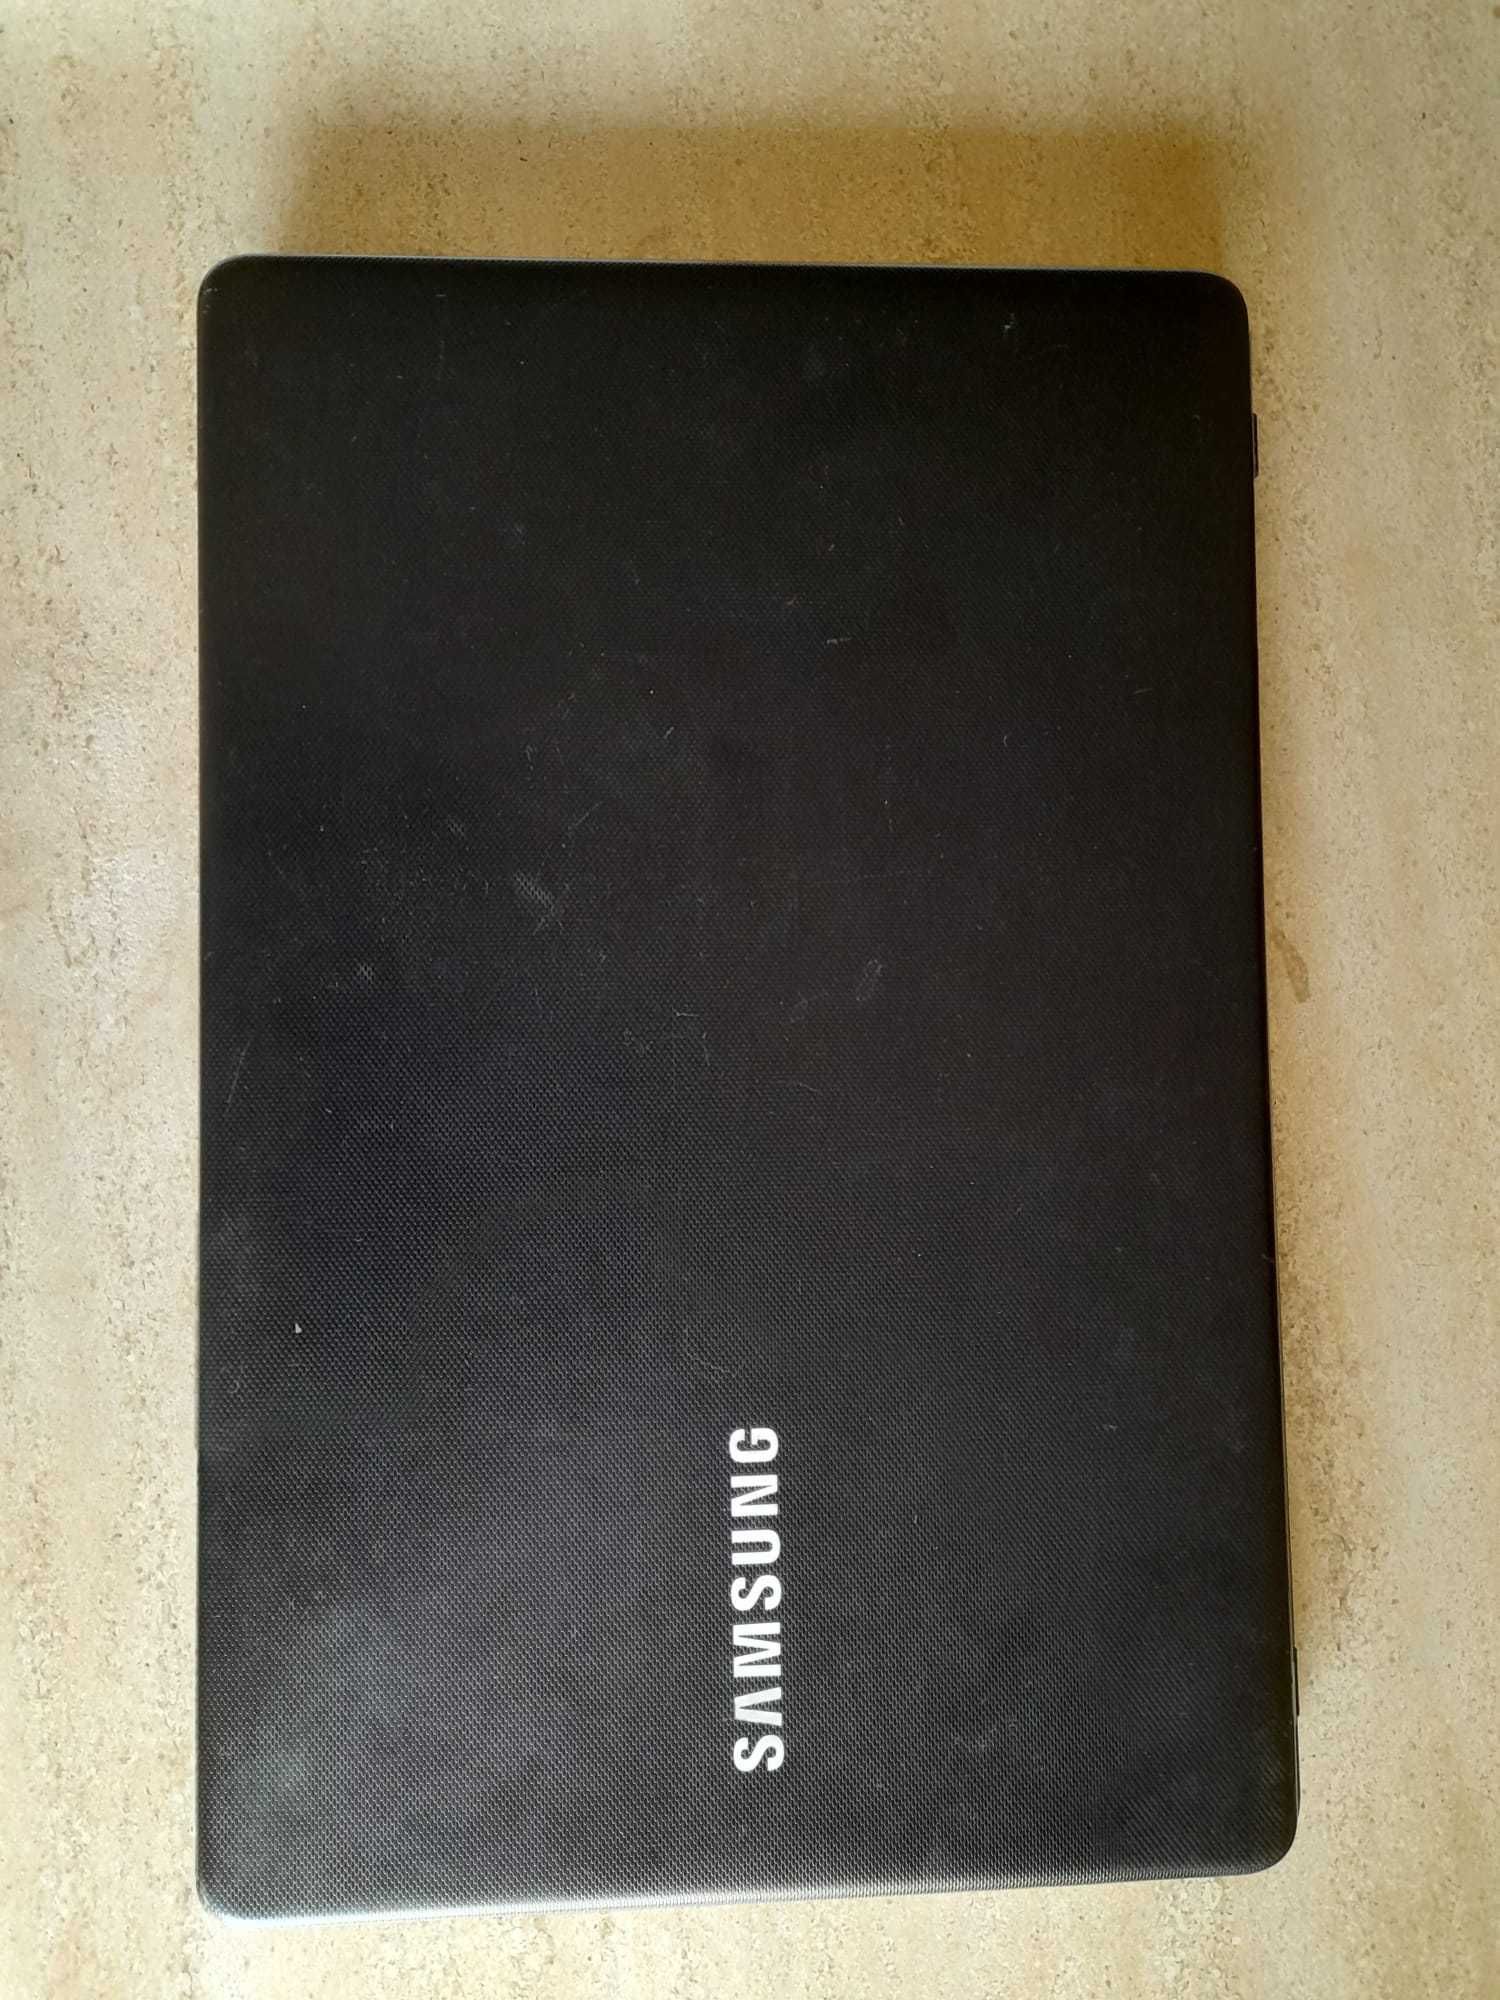 Vendo Notebook Samsung 300E5M (+1 de oferta)